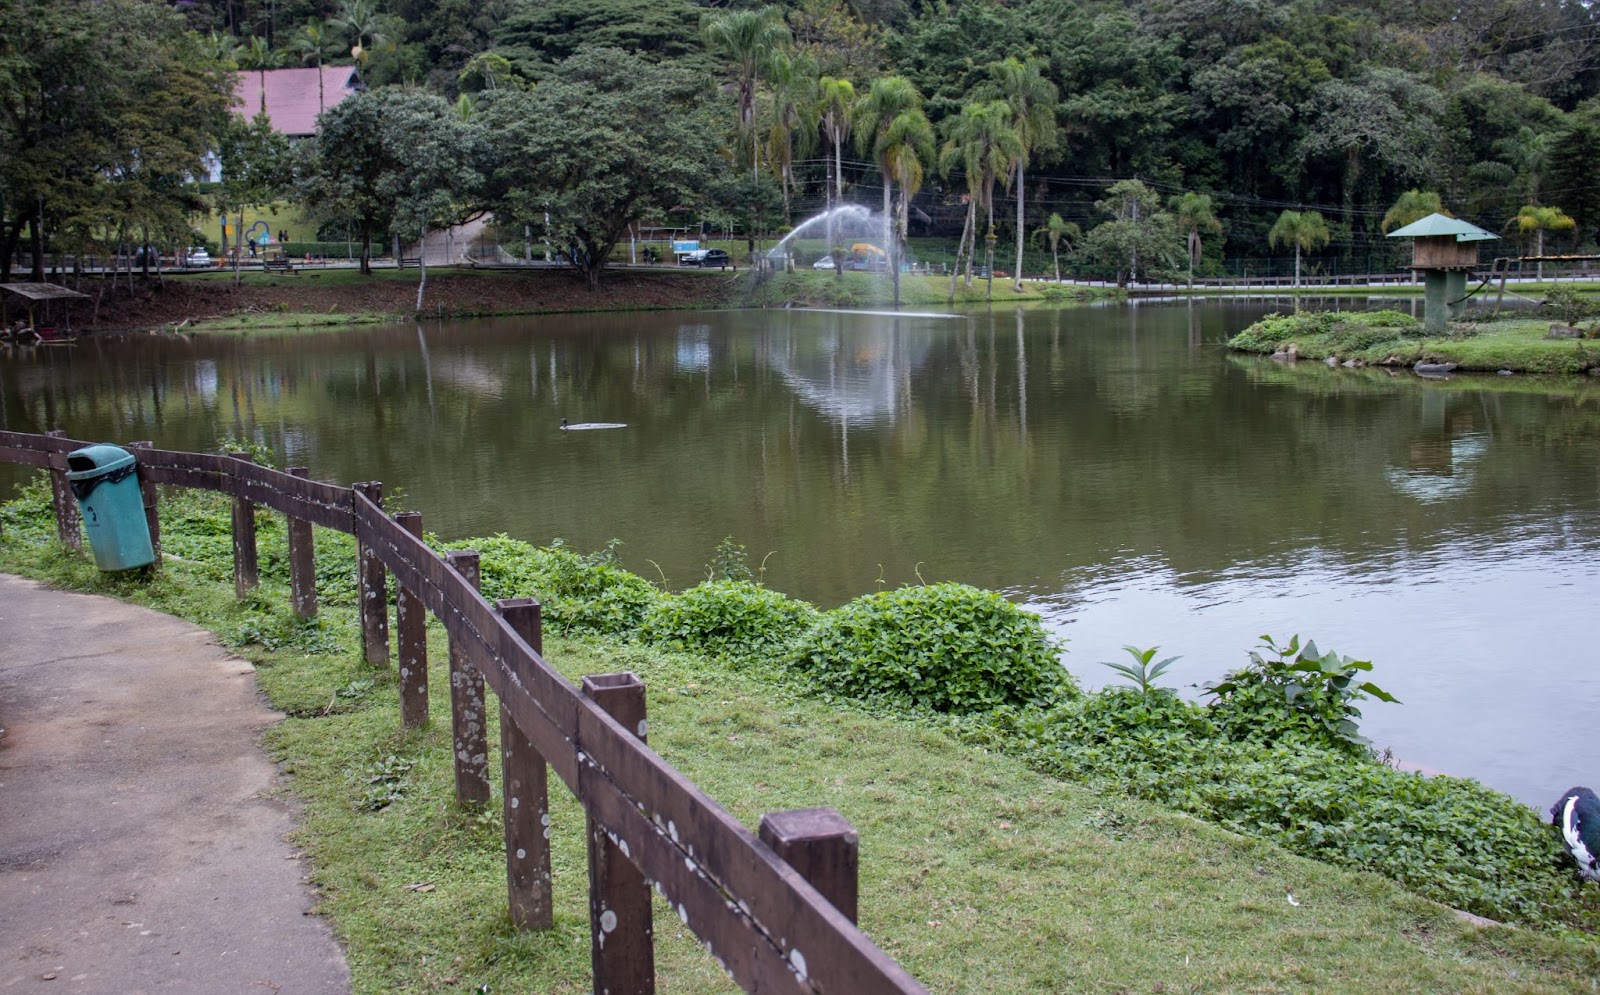 Lago do Zoobotânico de Joinville. As águas esverdeadas estão separadas da pista de caminhada por uma cerca de madeira. Ao redor do lago, há muitas áreas de vegetação densa e verde.